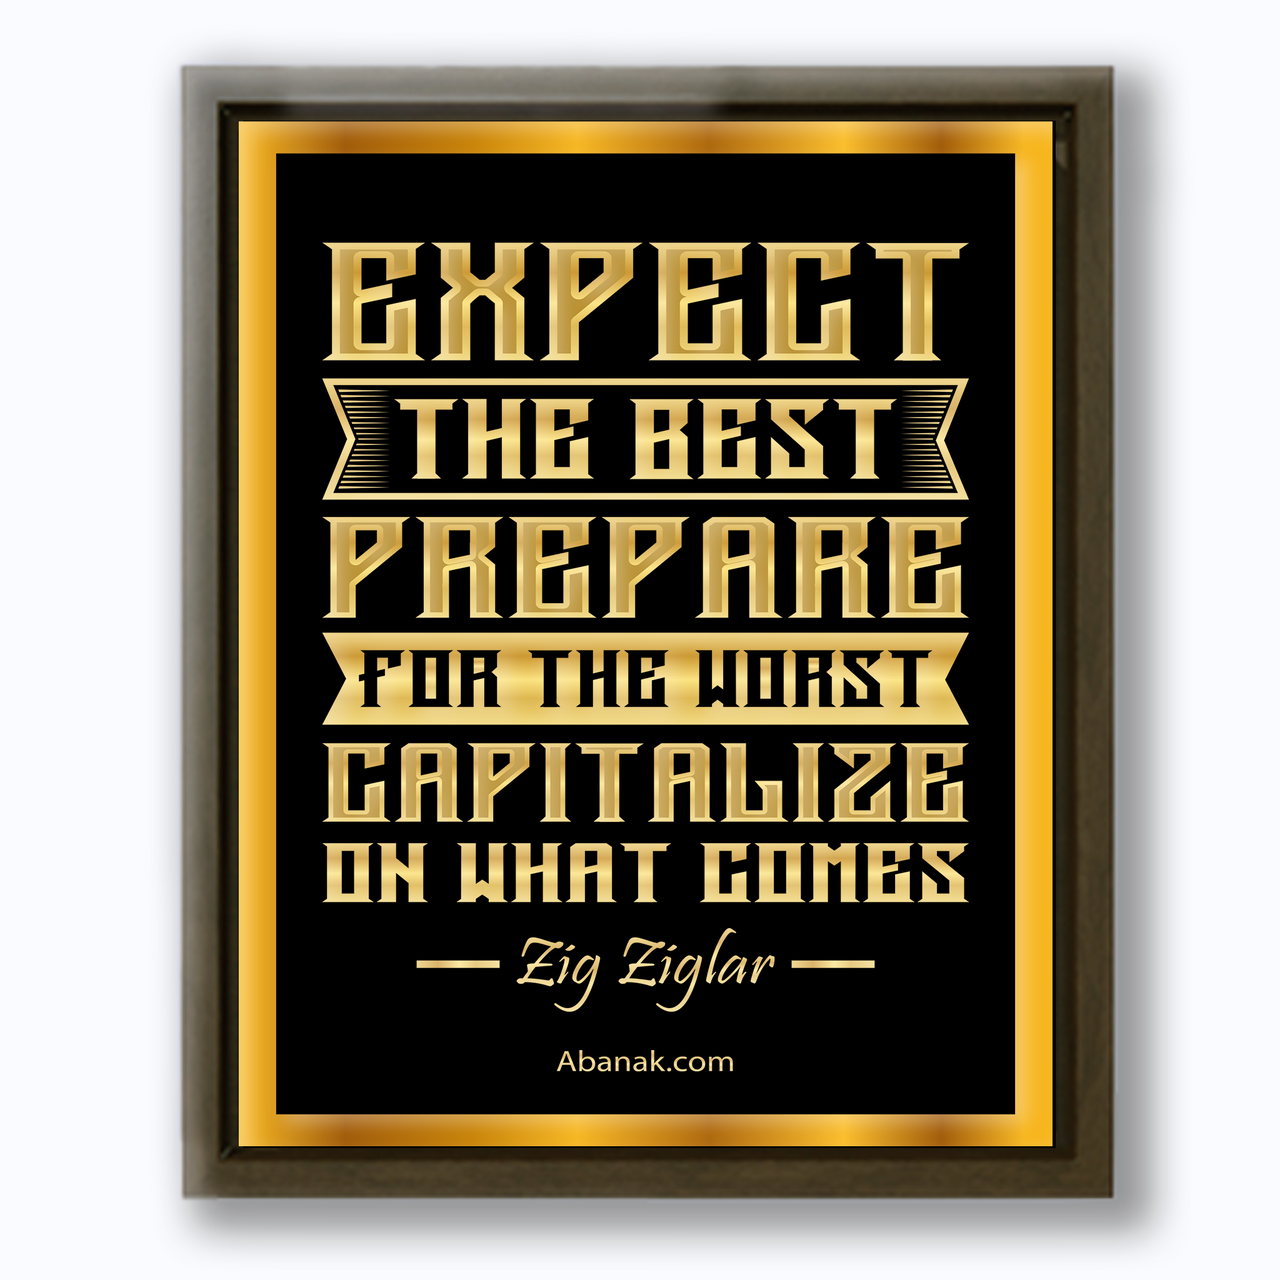 Expect the Best  - Zig Ziglar Quote - Canvas Print